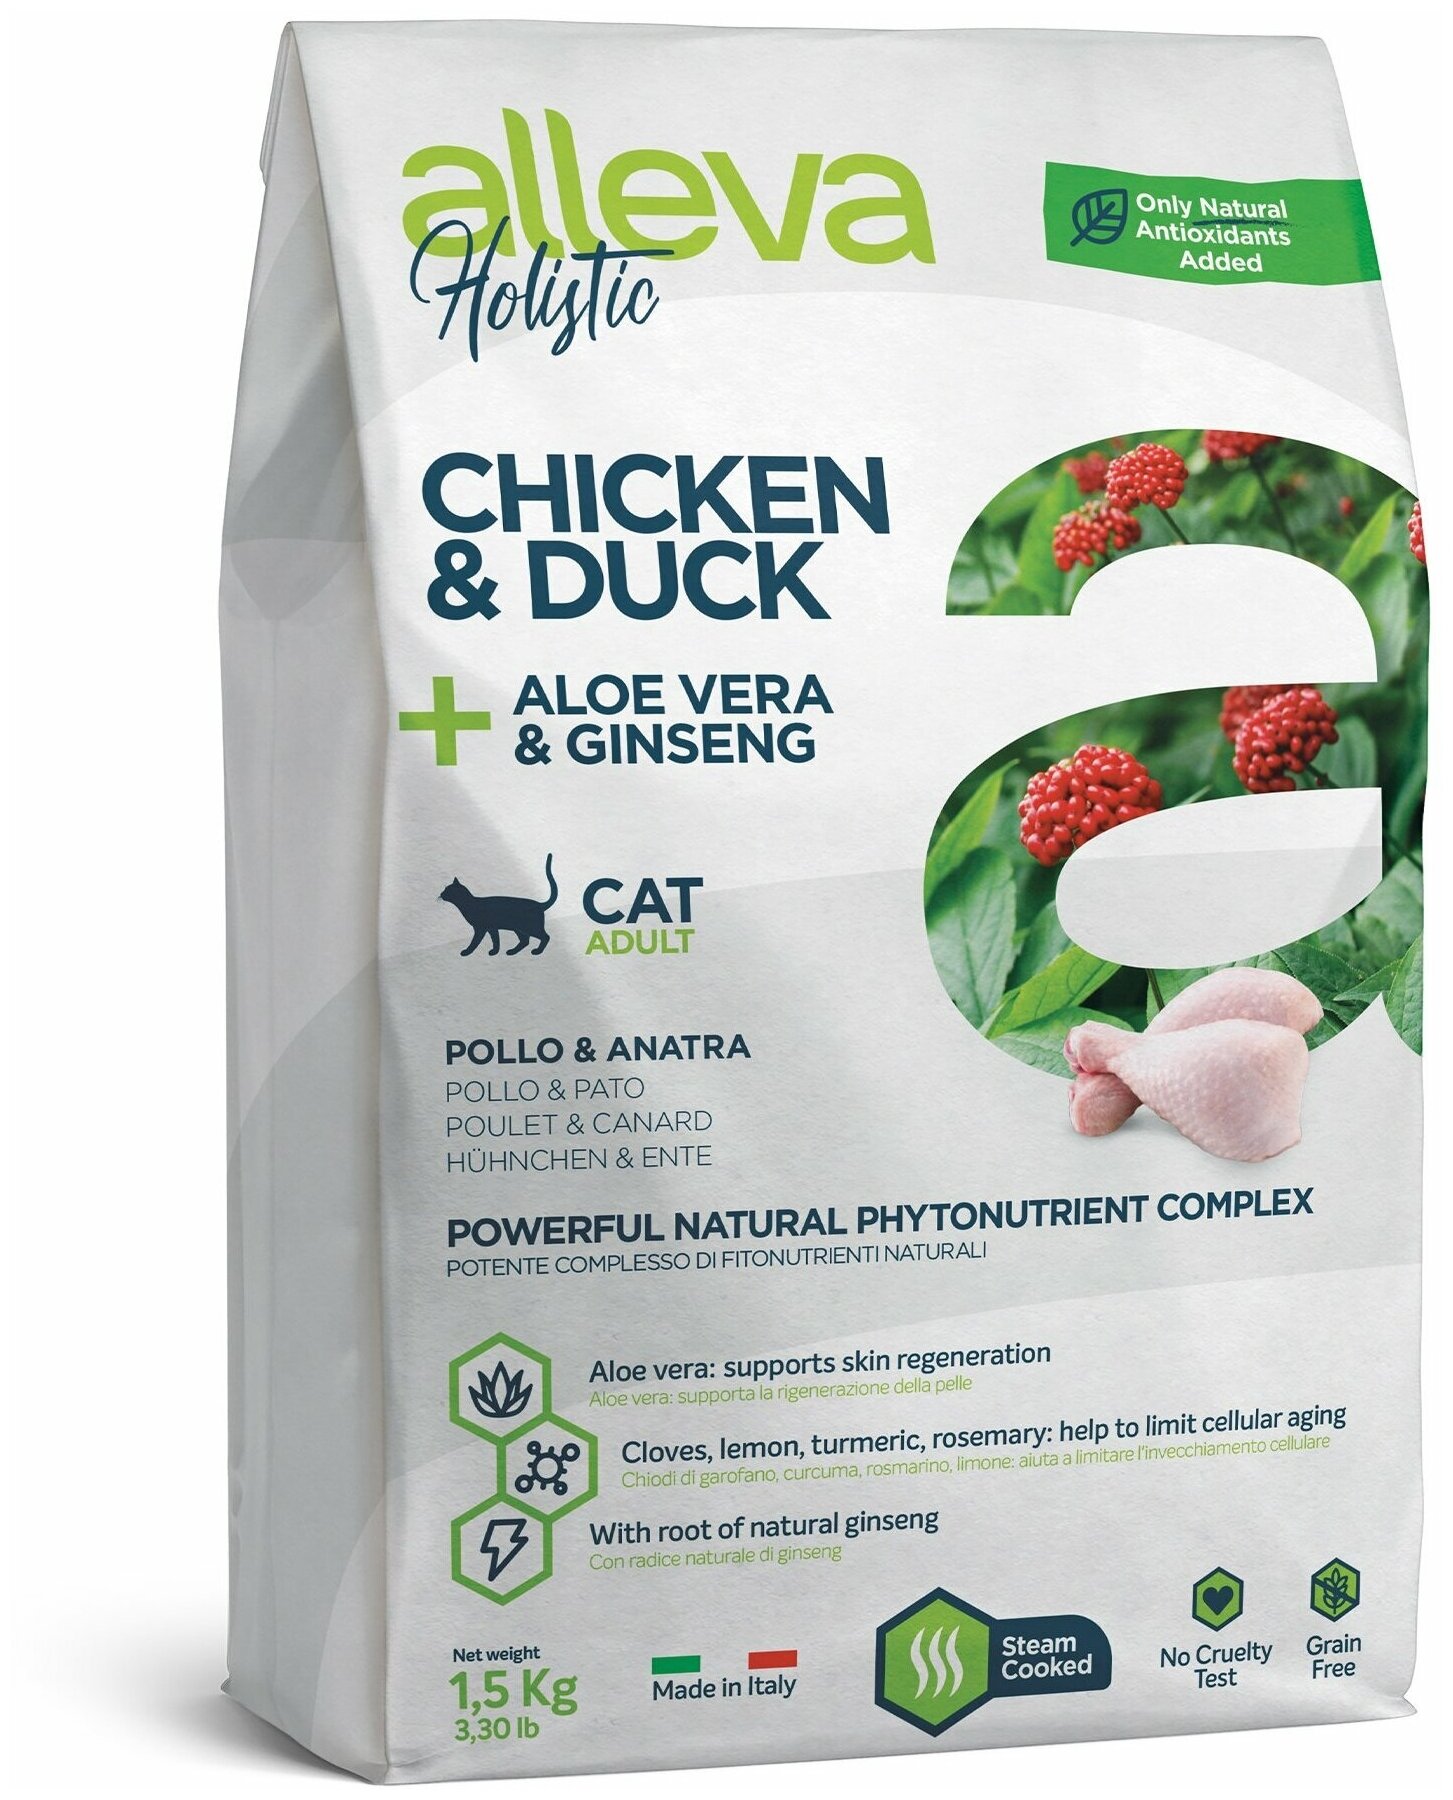 Alleva Holistic Cat Adult Chicken & Duck сухой корм для взрослых кошек с курицей и уткой, алое вера и женьшенем - 1,5 кг